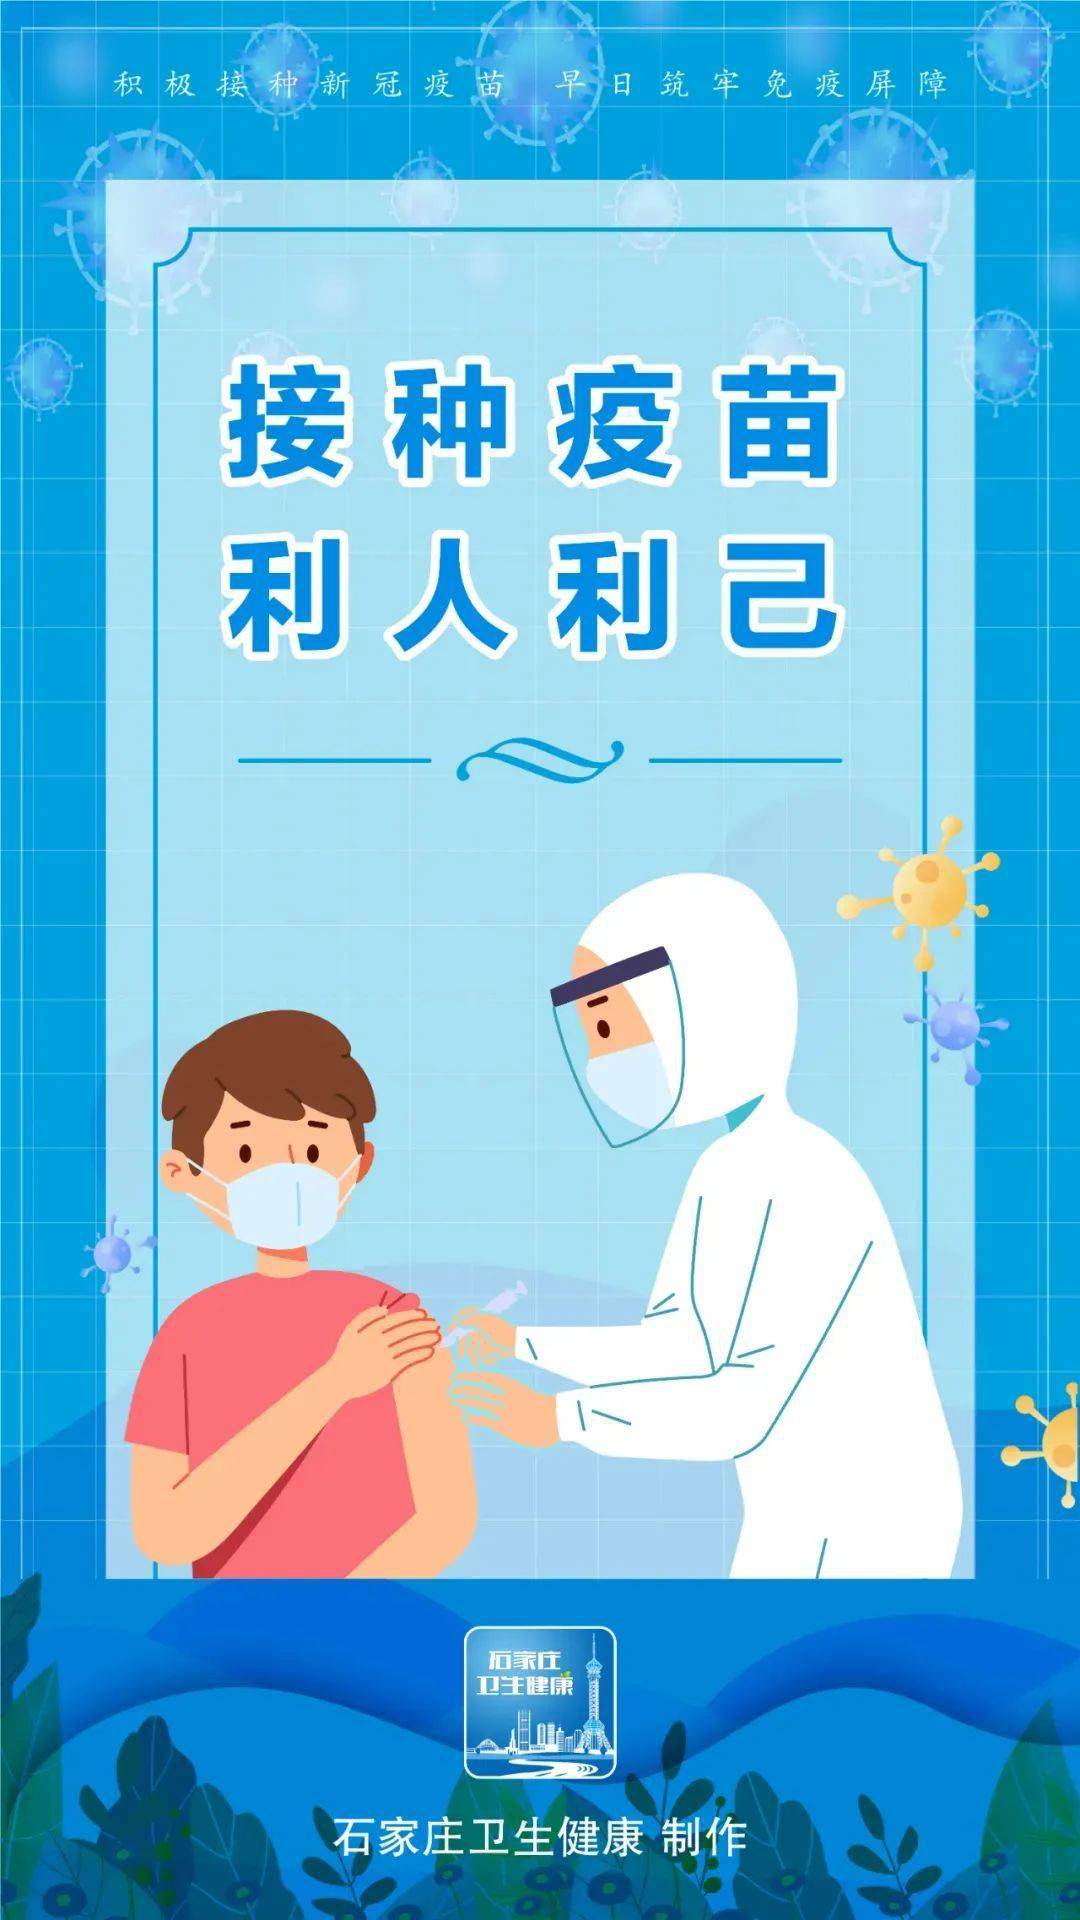 新冠肺炎疫苗宣传海报图片